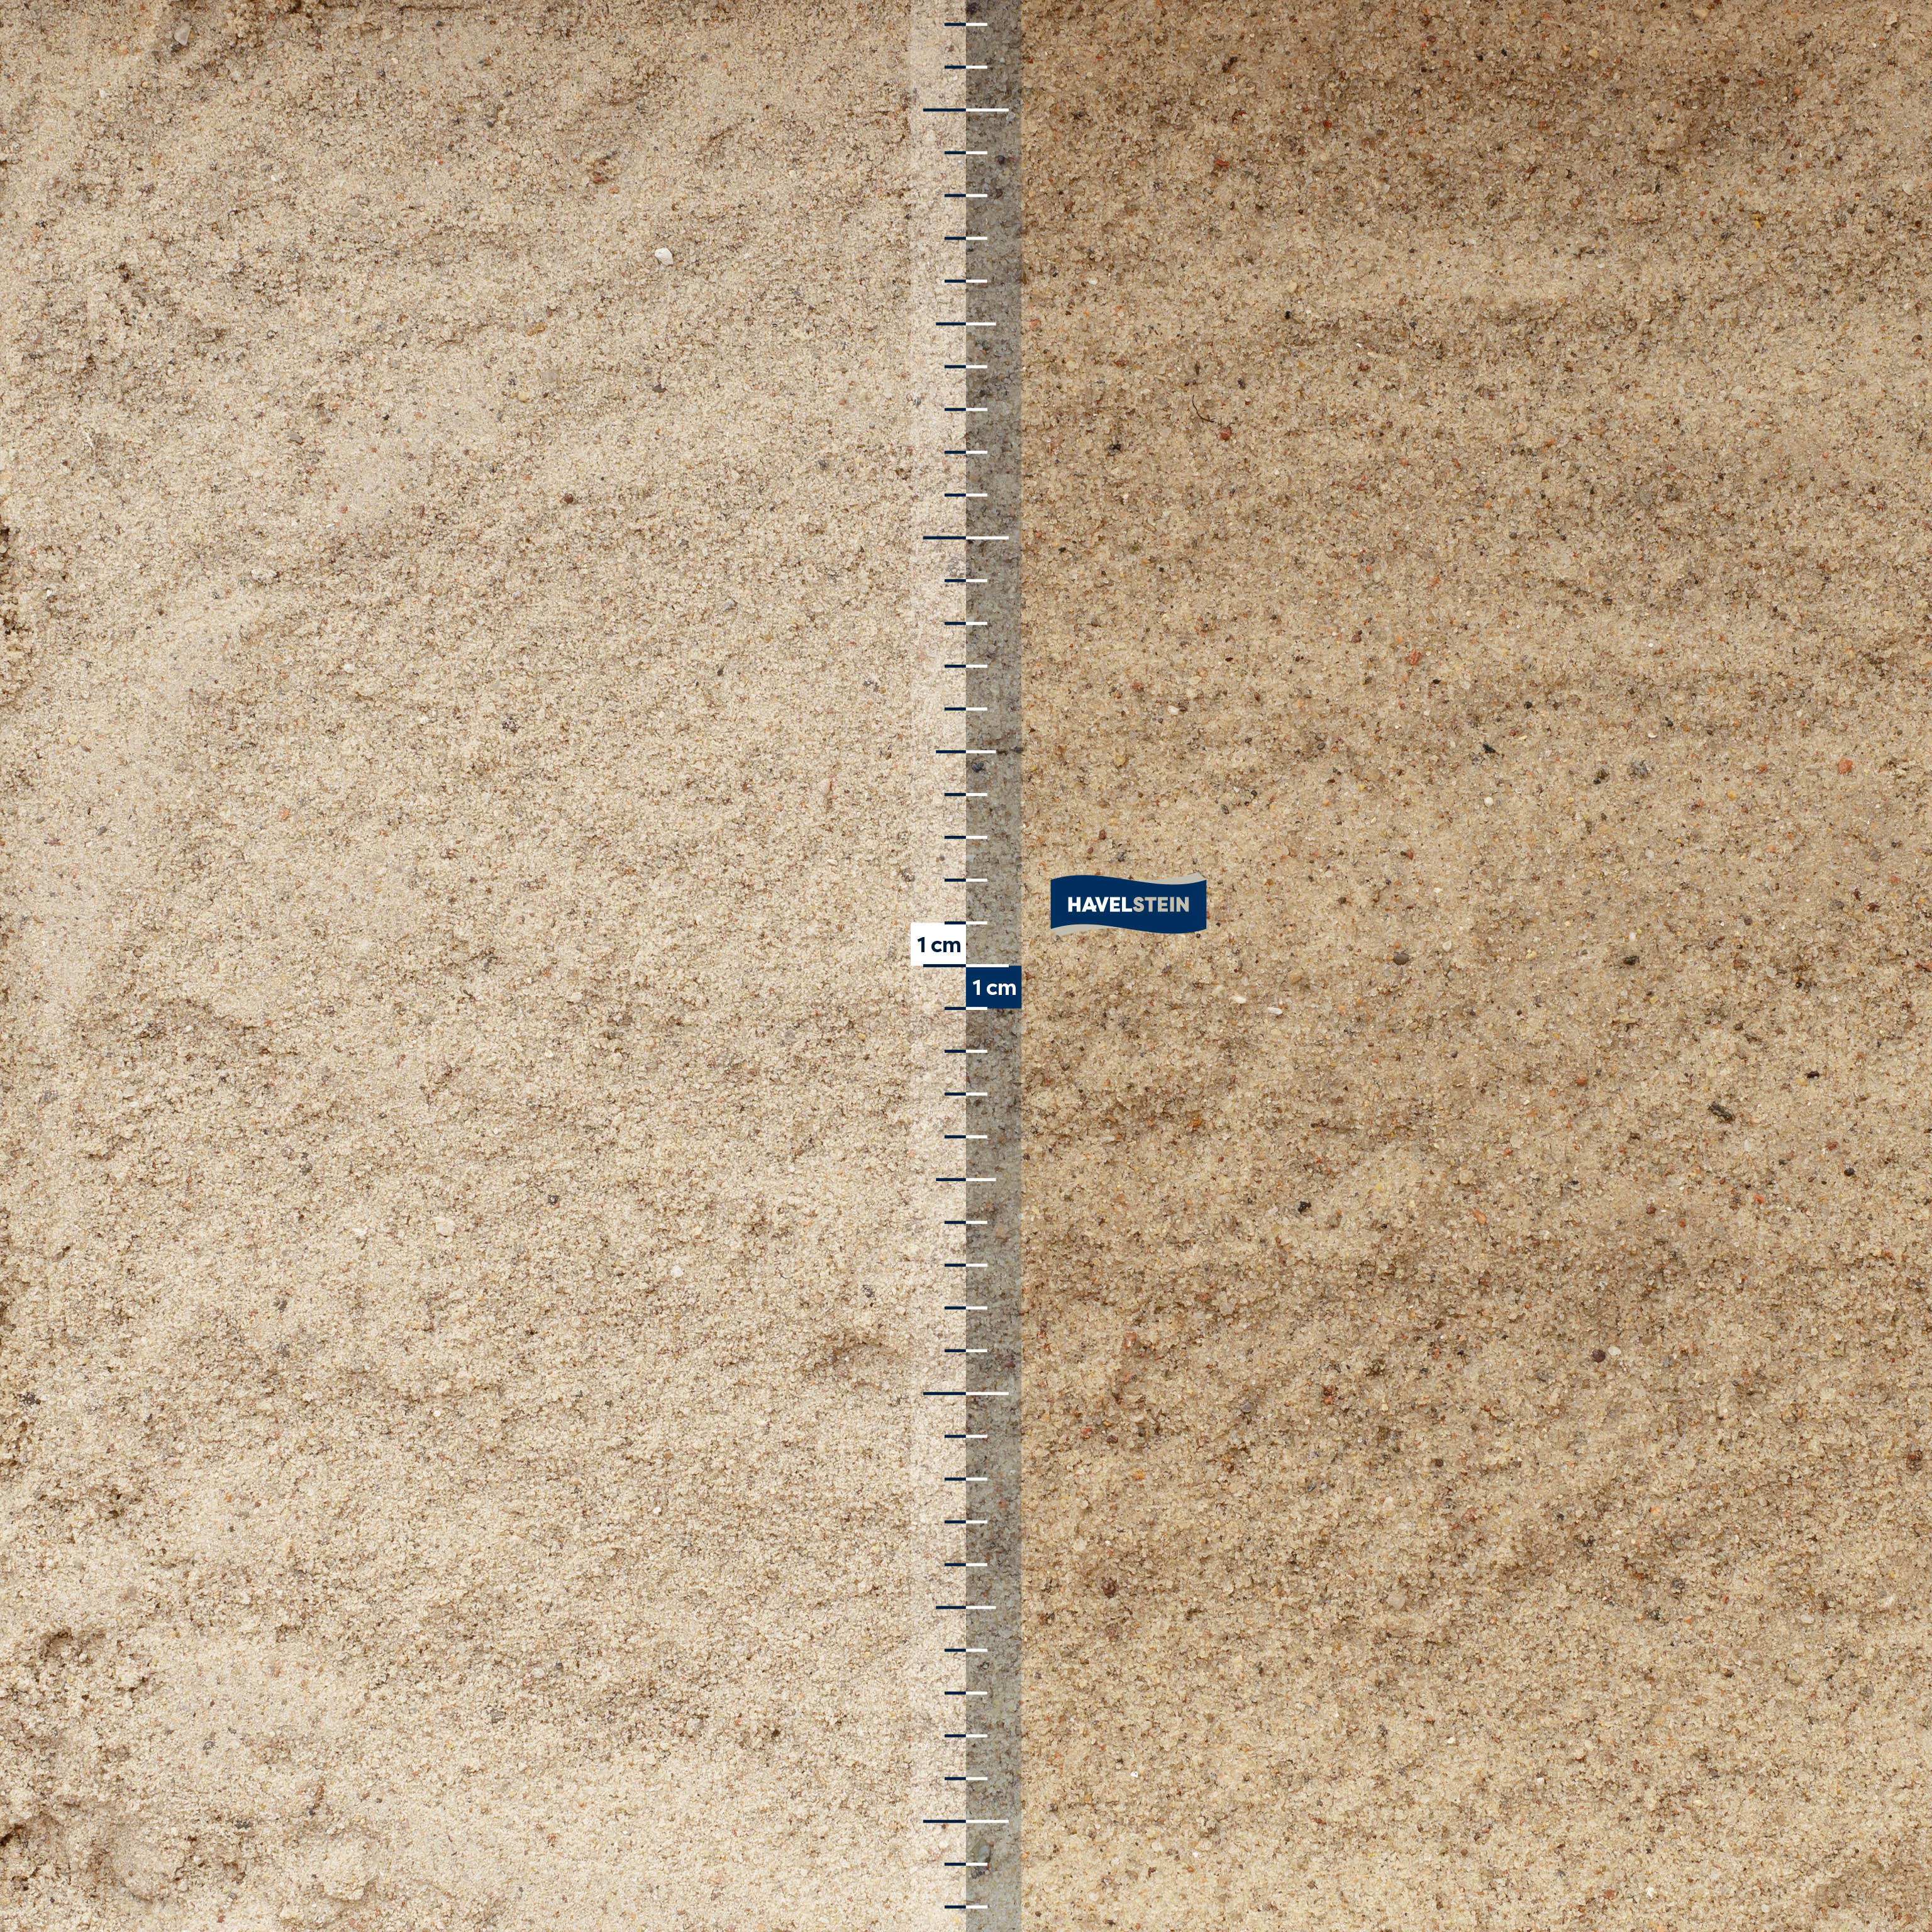 Sand für den Buddel- / Sandkasten, gewaschen (Sand (Allgemein)), Spielsand für Sandkasten, 0/2 mm, gewaschen (gelblich)